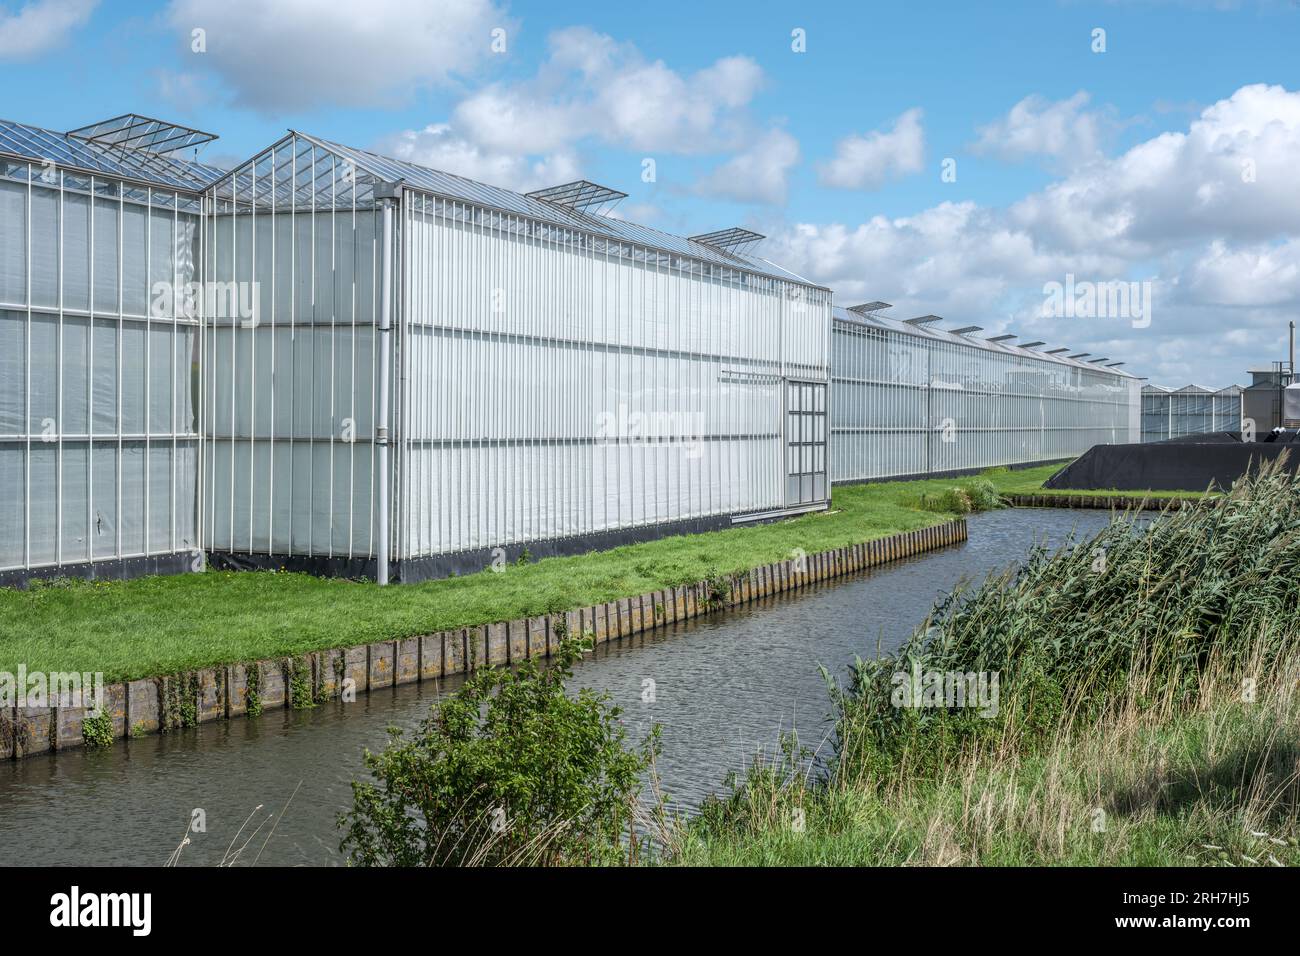 Invernadero Industrial Exterior De Los Países Bajos Imagen de archivo -  Imagen de crecimiento, europa: 265743045